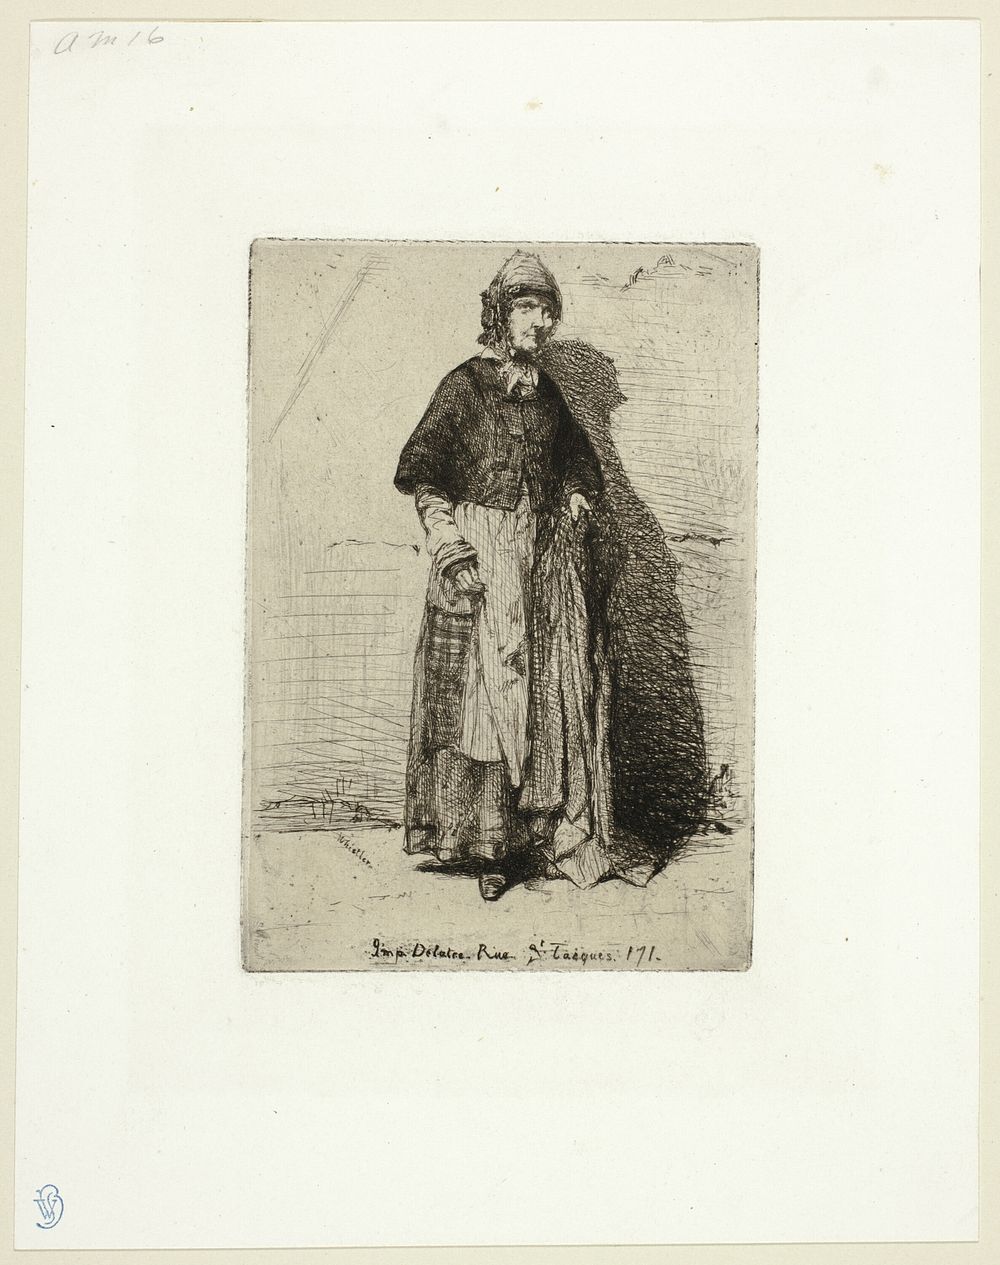 La Mère Gérard by James McNeill Whistler